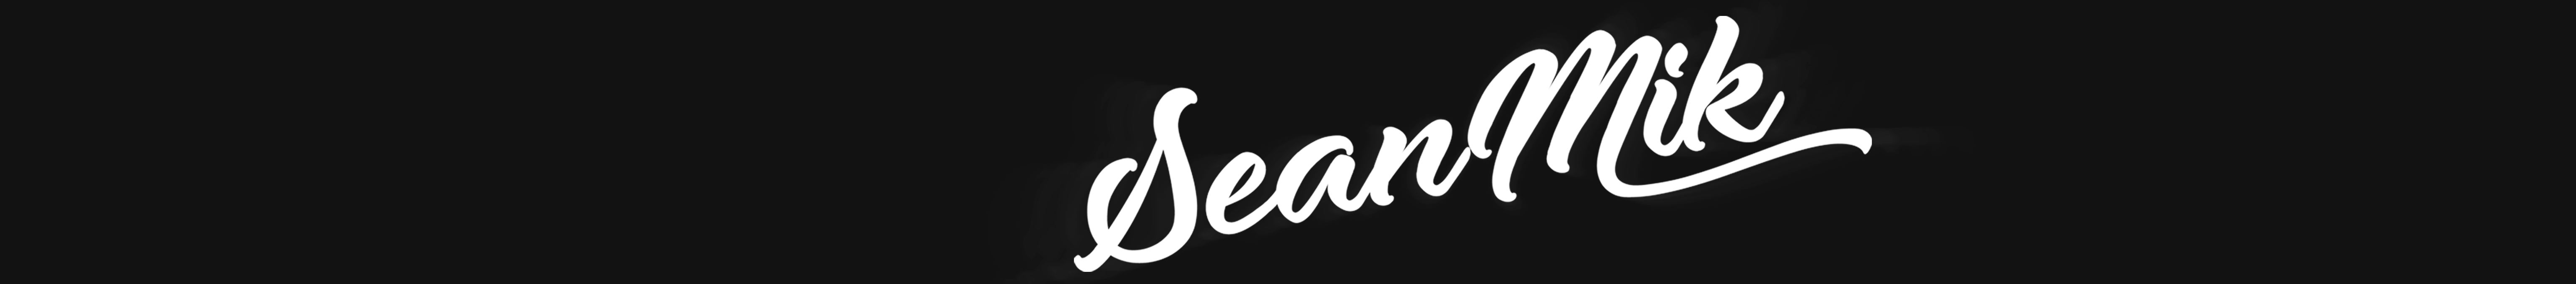 Banner profilu uživatele SEANMIK DESIGN